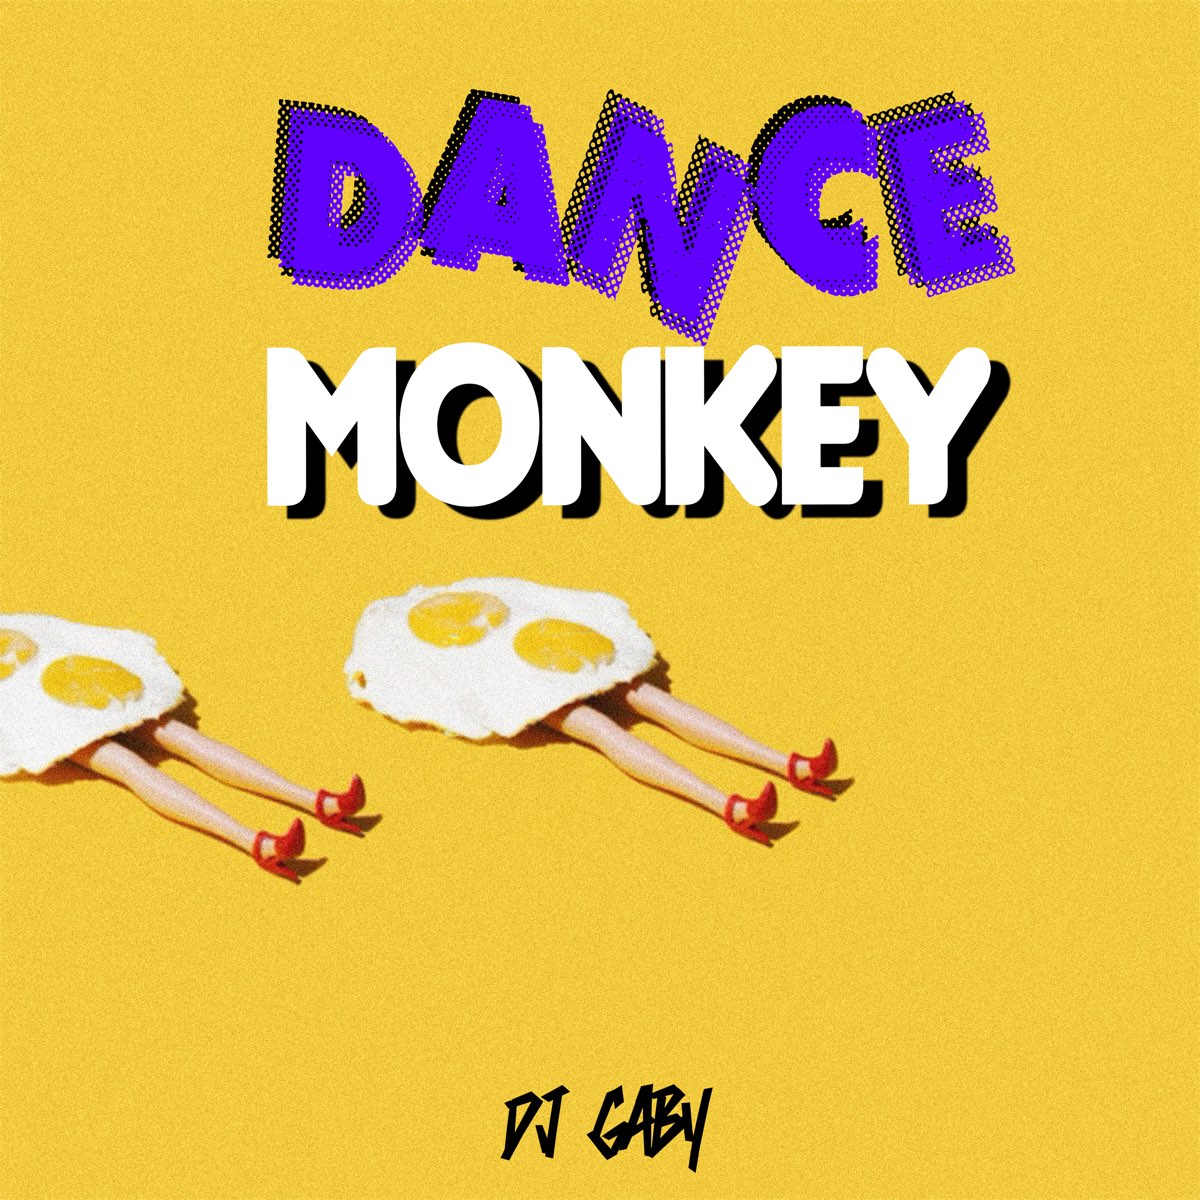 Dance Monkey (Remix) - Single de Dj Gaby en Apple Music